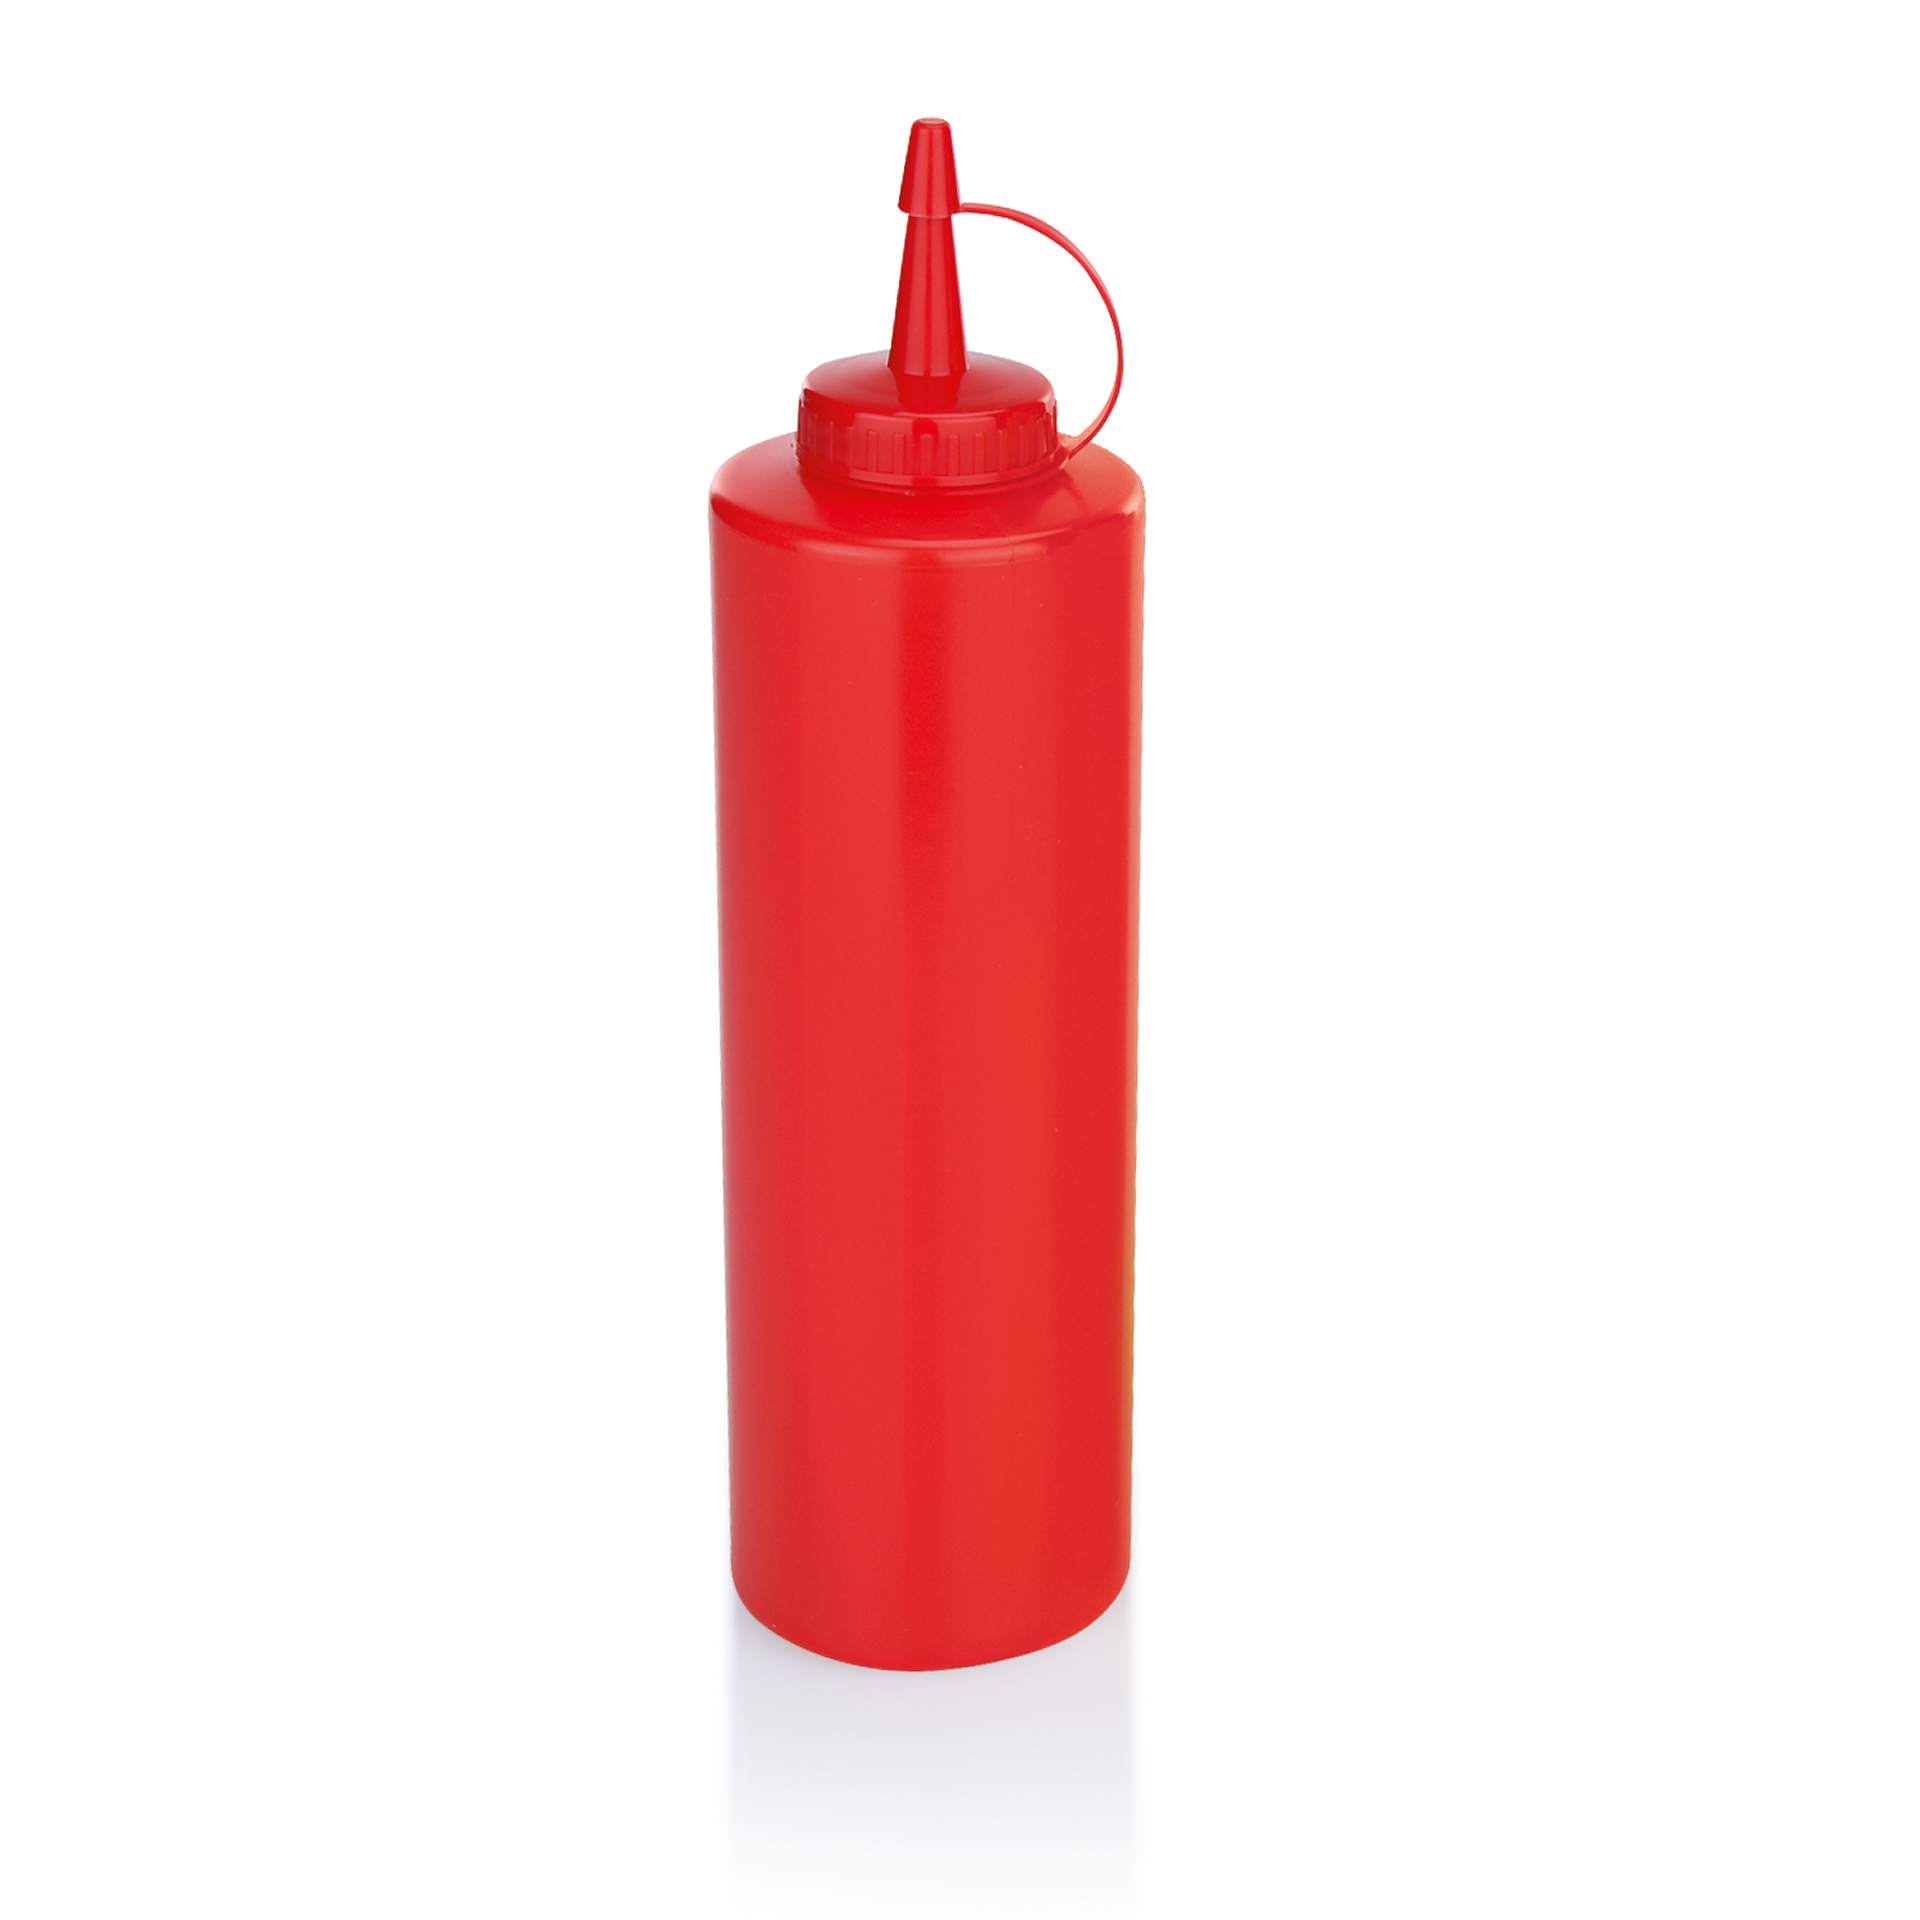 Quetschflasche, 0,70 ltr., rot, Polyethylen